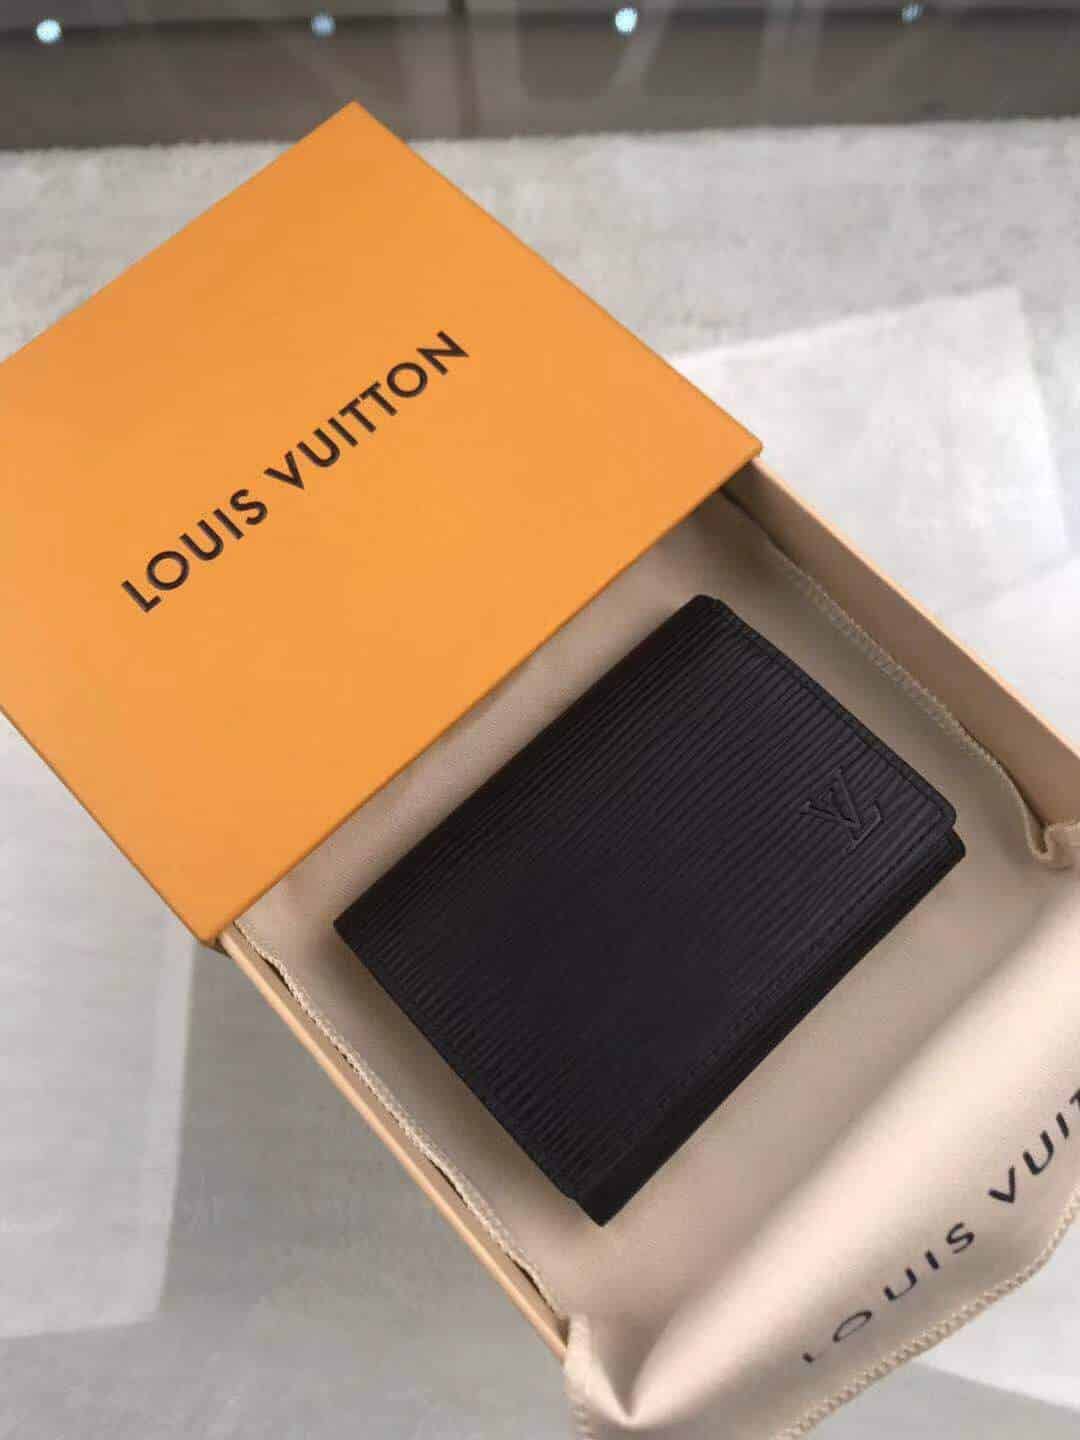 Louis Vuitton Monogram Eclipse Enveloppe Carte de visite M63801-black